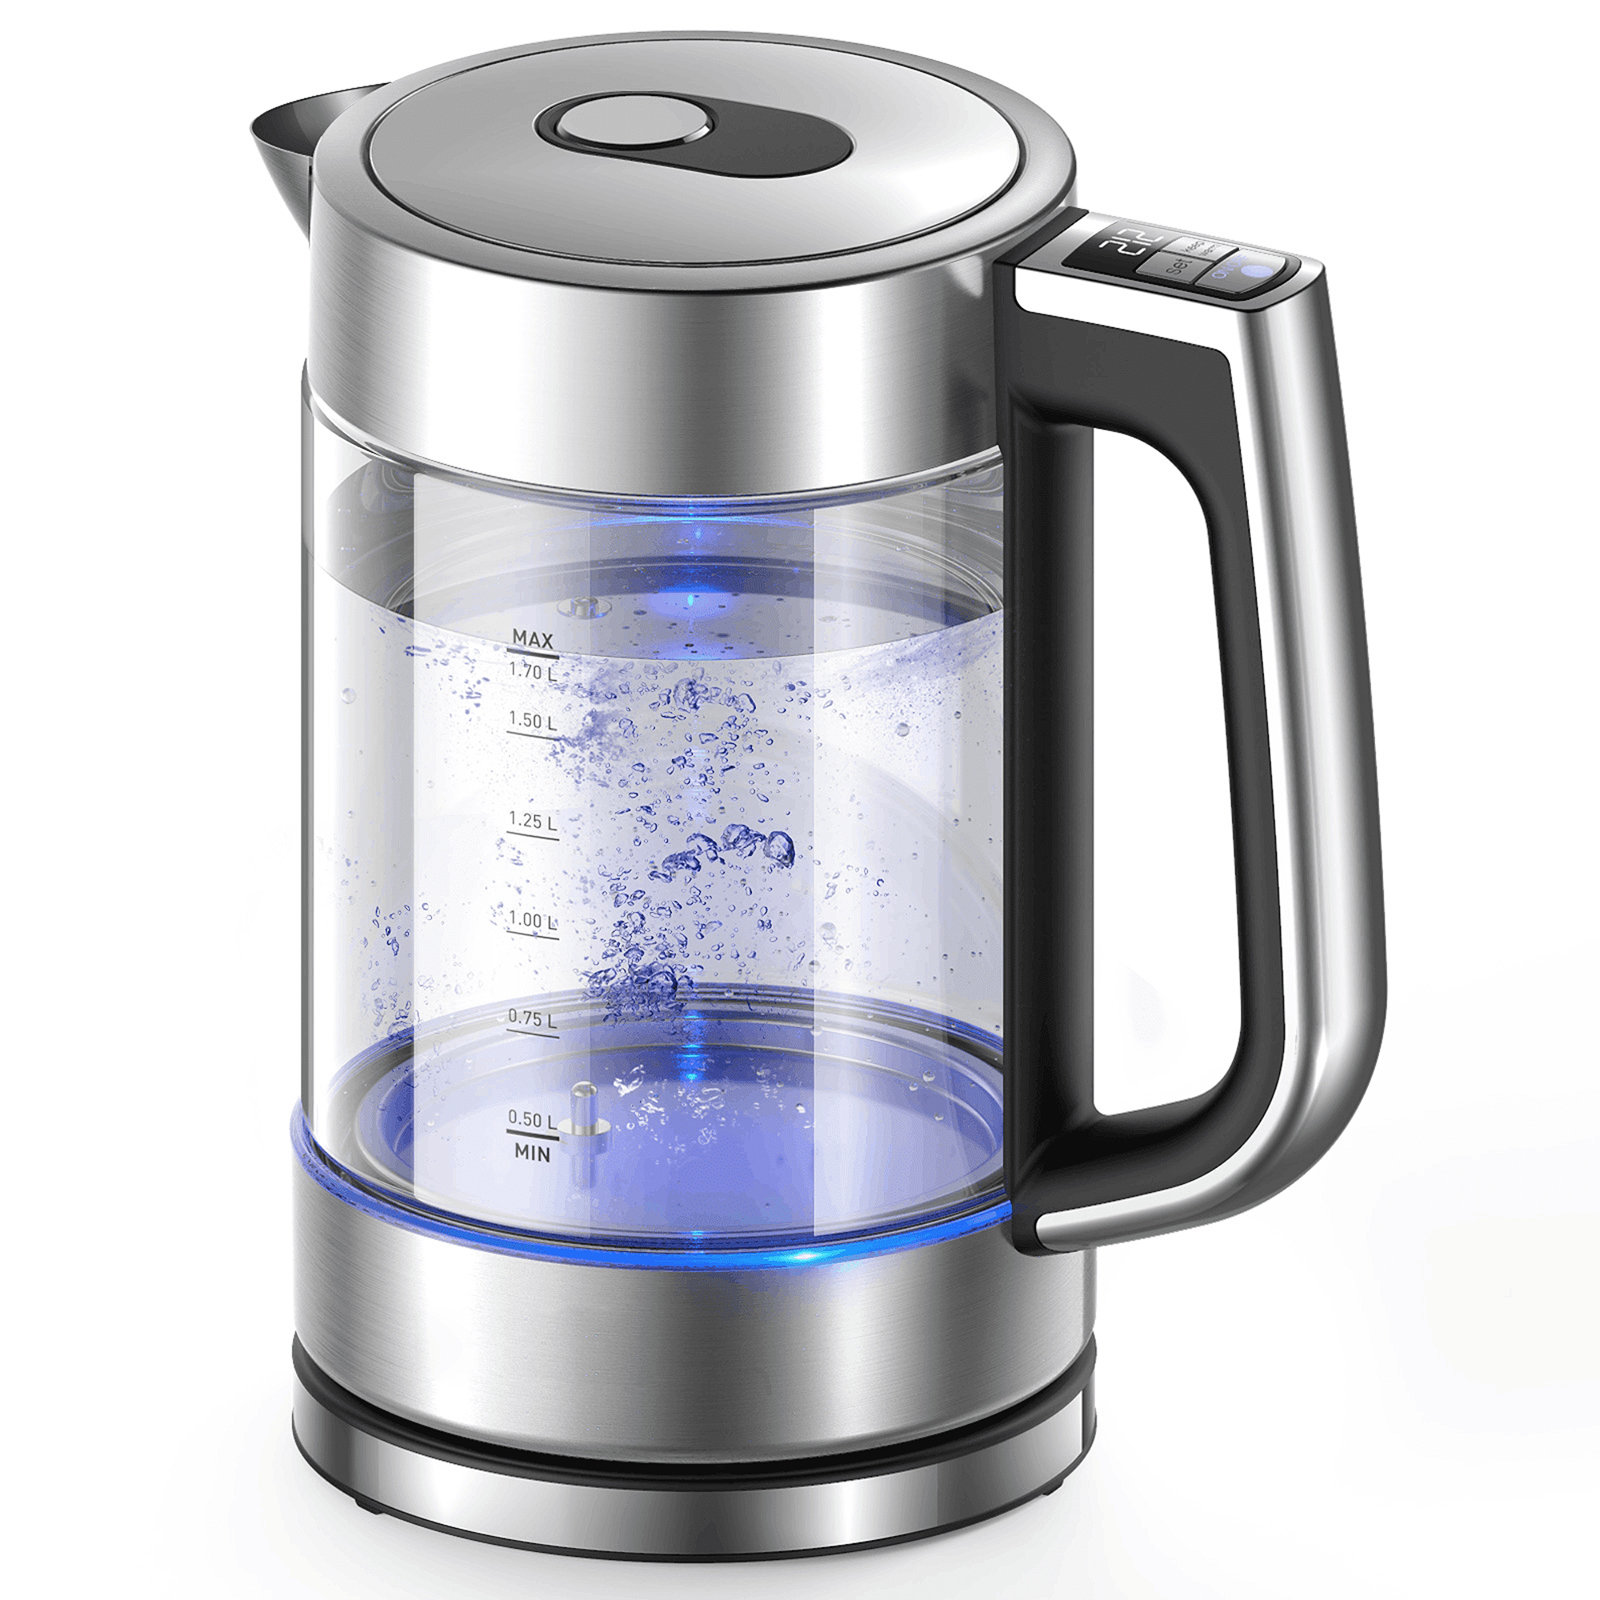 https://assets.wfcdn.com/im/45243287/compr-r85/2405/240558003/binnbox-18-quarts-stainless-steel-electric-tea-kettle.jpg